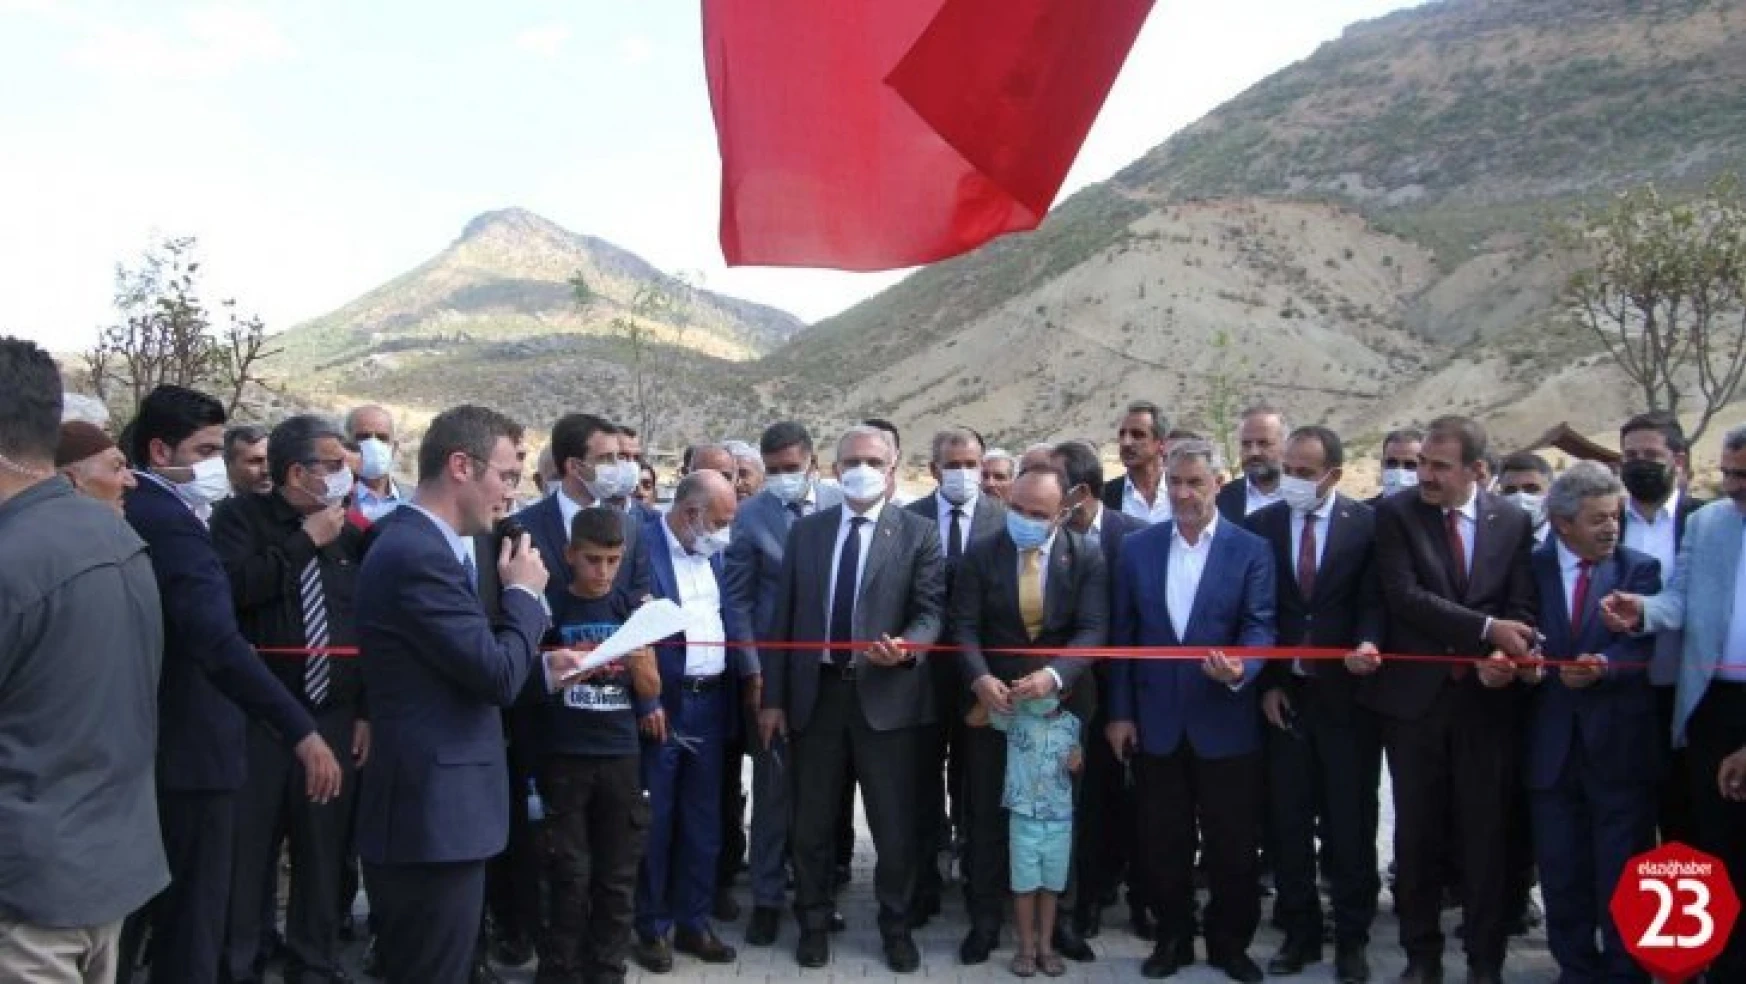 Arıcak'ta Belde Belediyesi Vatandaşlar İçin Millet Bahçesi Yaptı, İki Vali Açılışa Katıldı